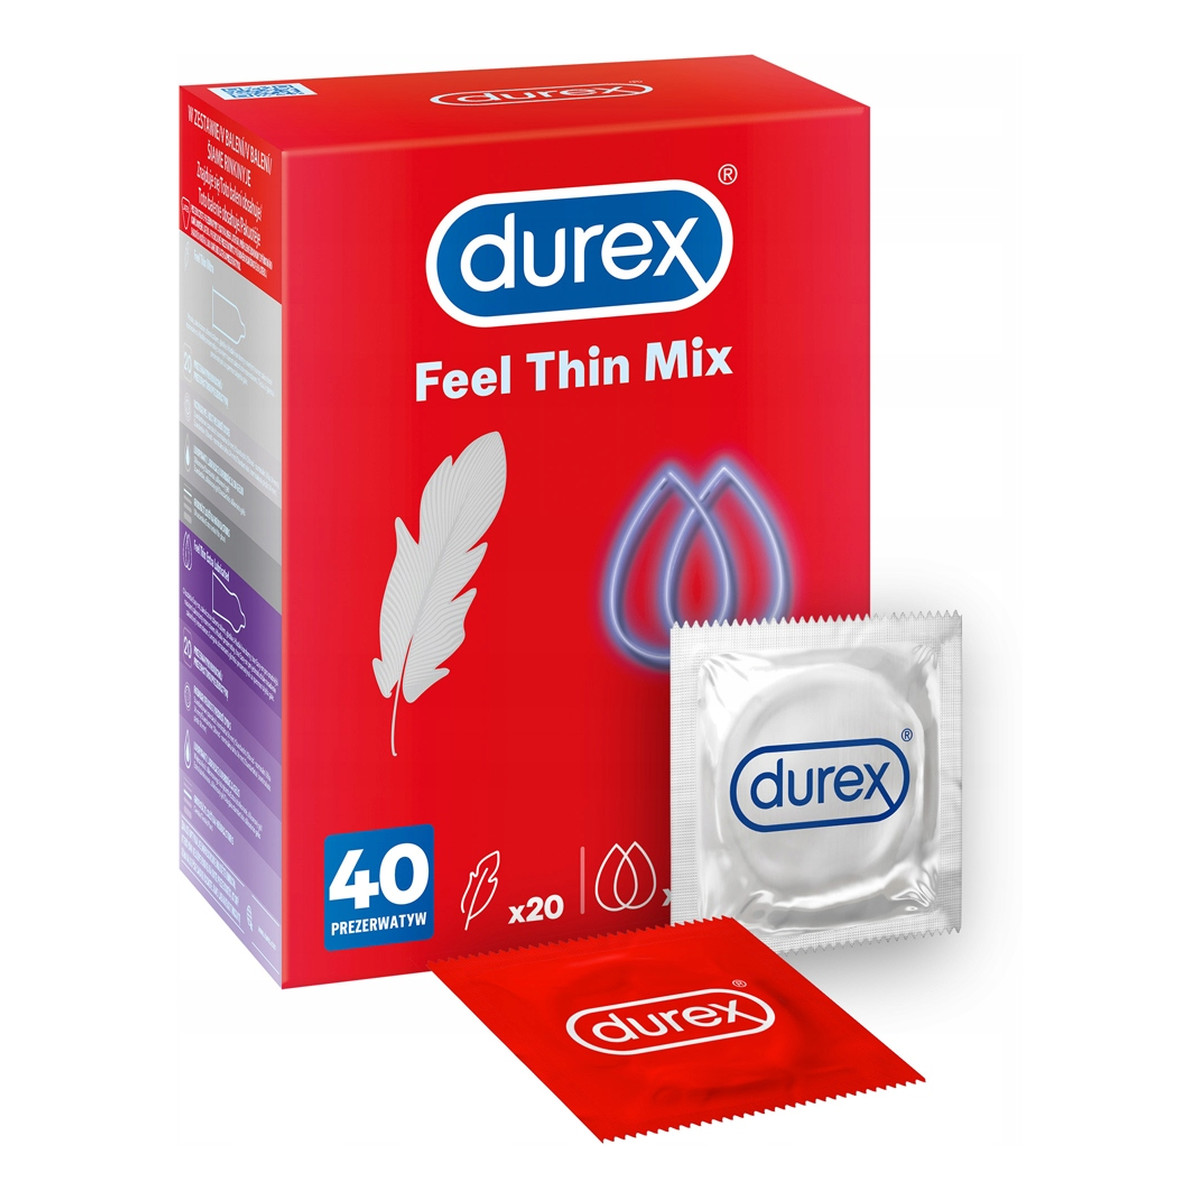 Durex Feel thin mix prezerwatywy cienkie 40 szt